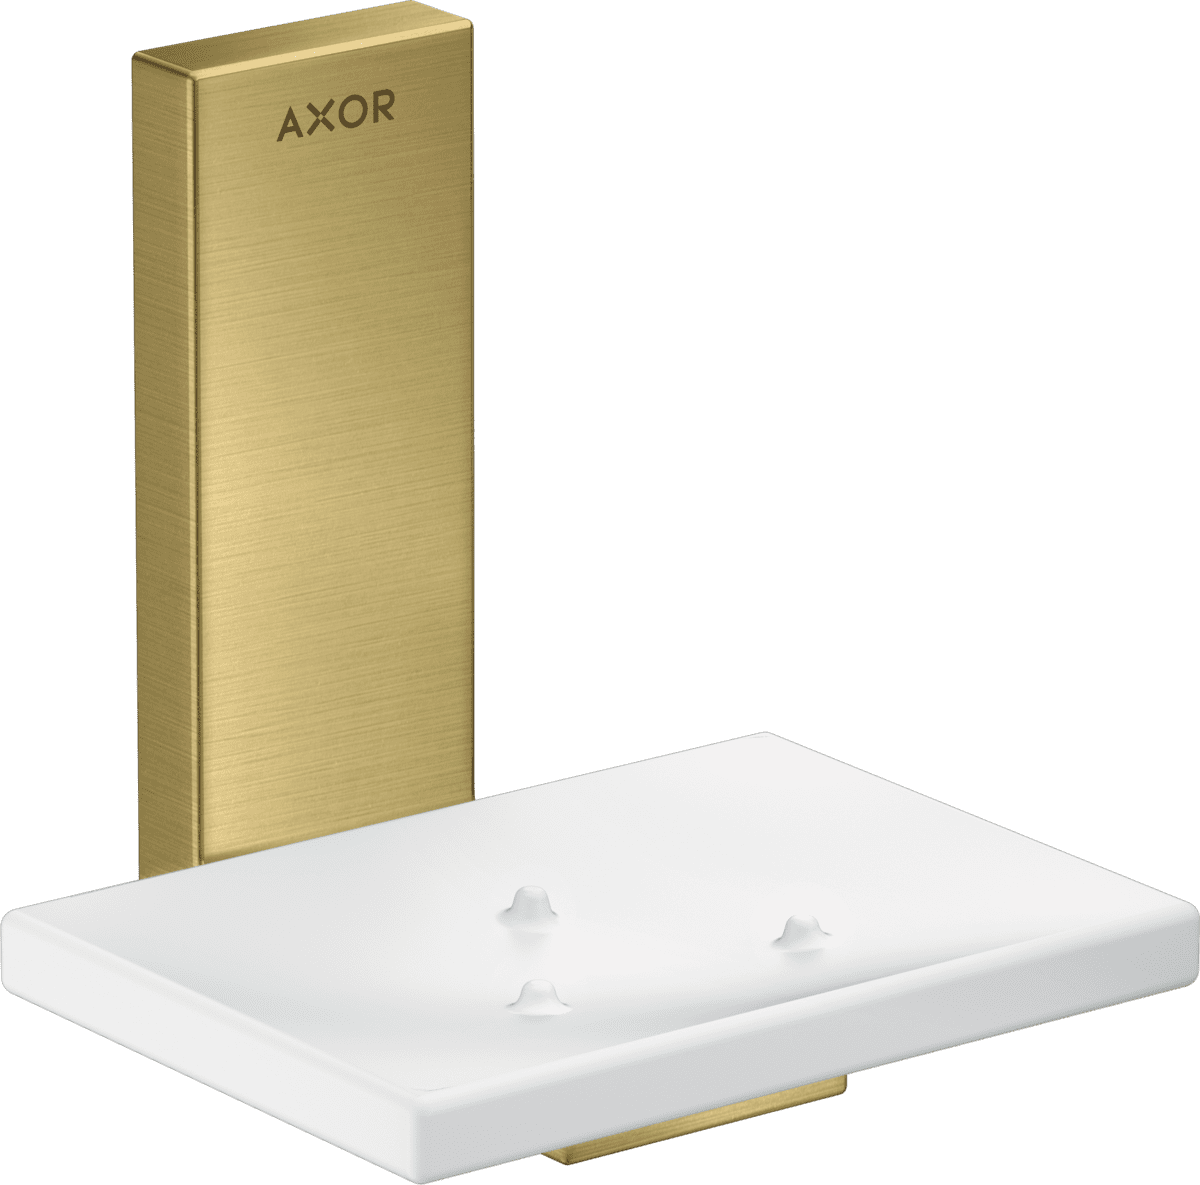 εικόνα του HANSGROHE AXOR Universal Rectangular Soap dish #42605950 - Brushed Brass